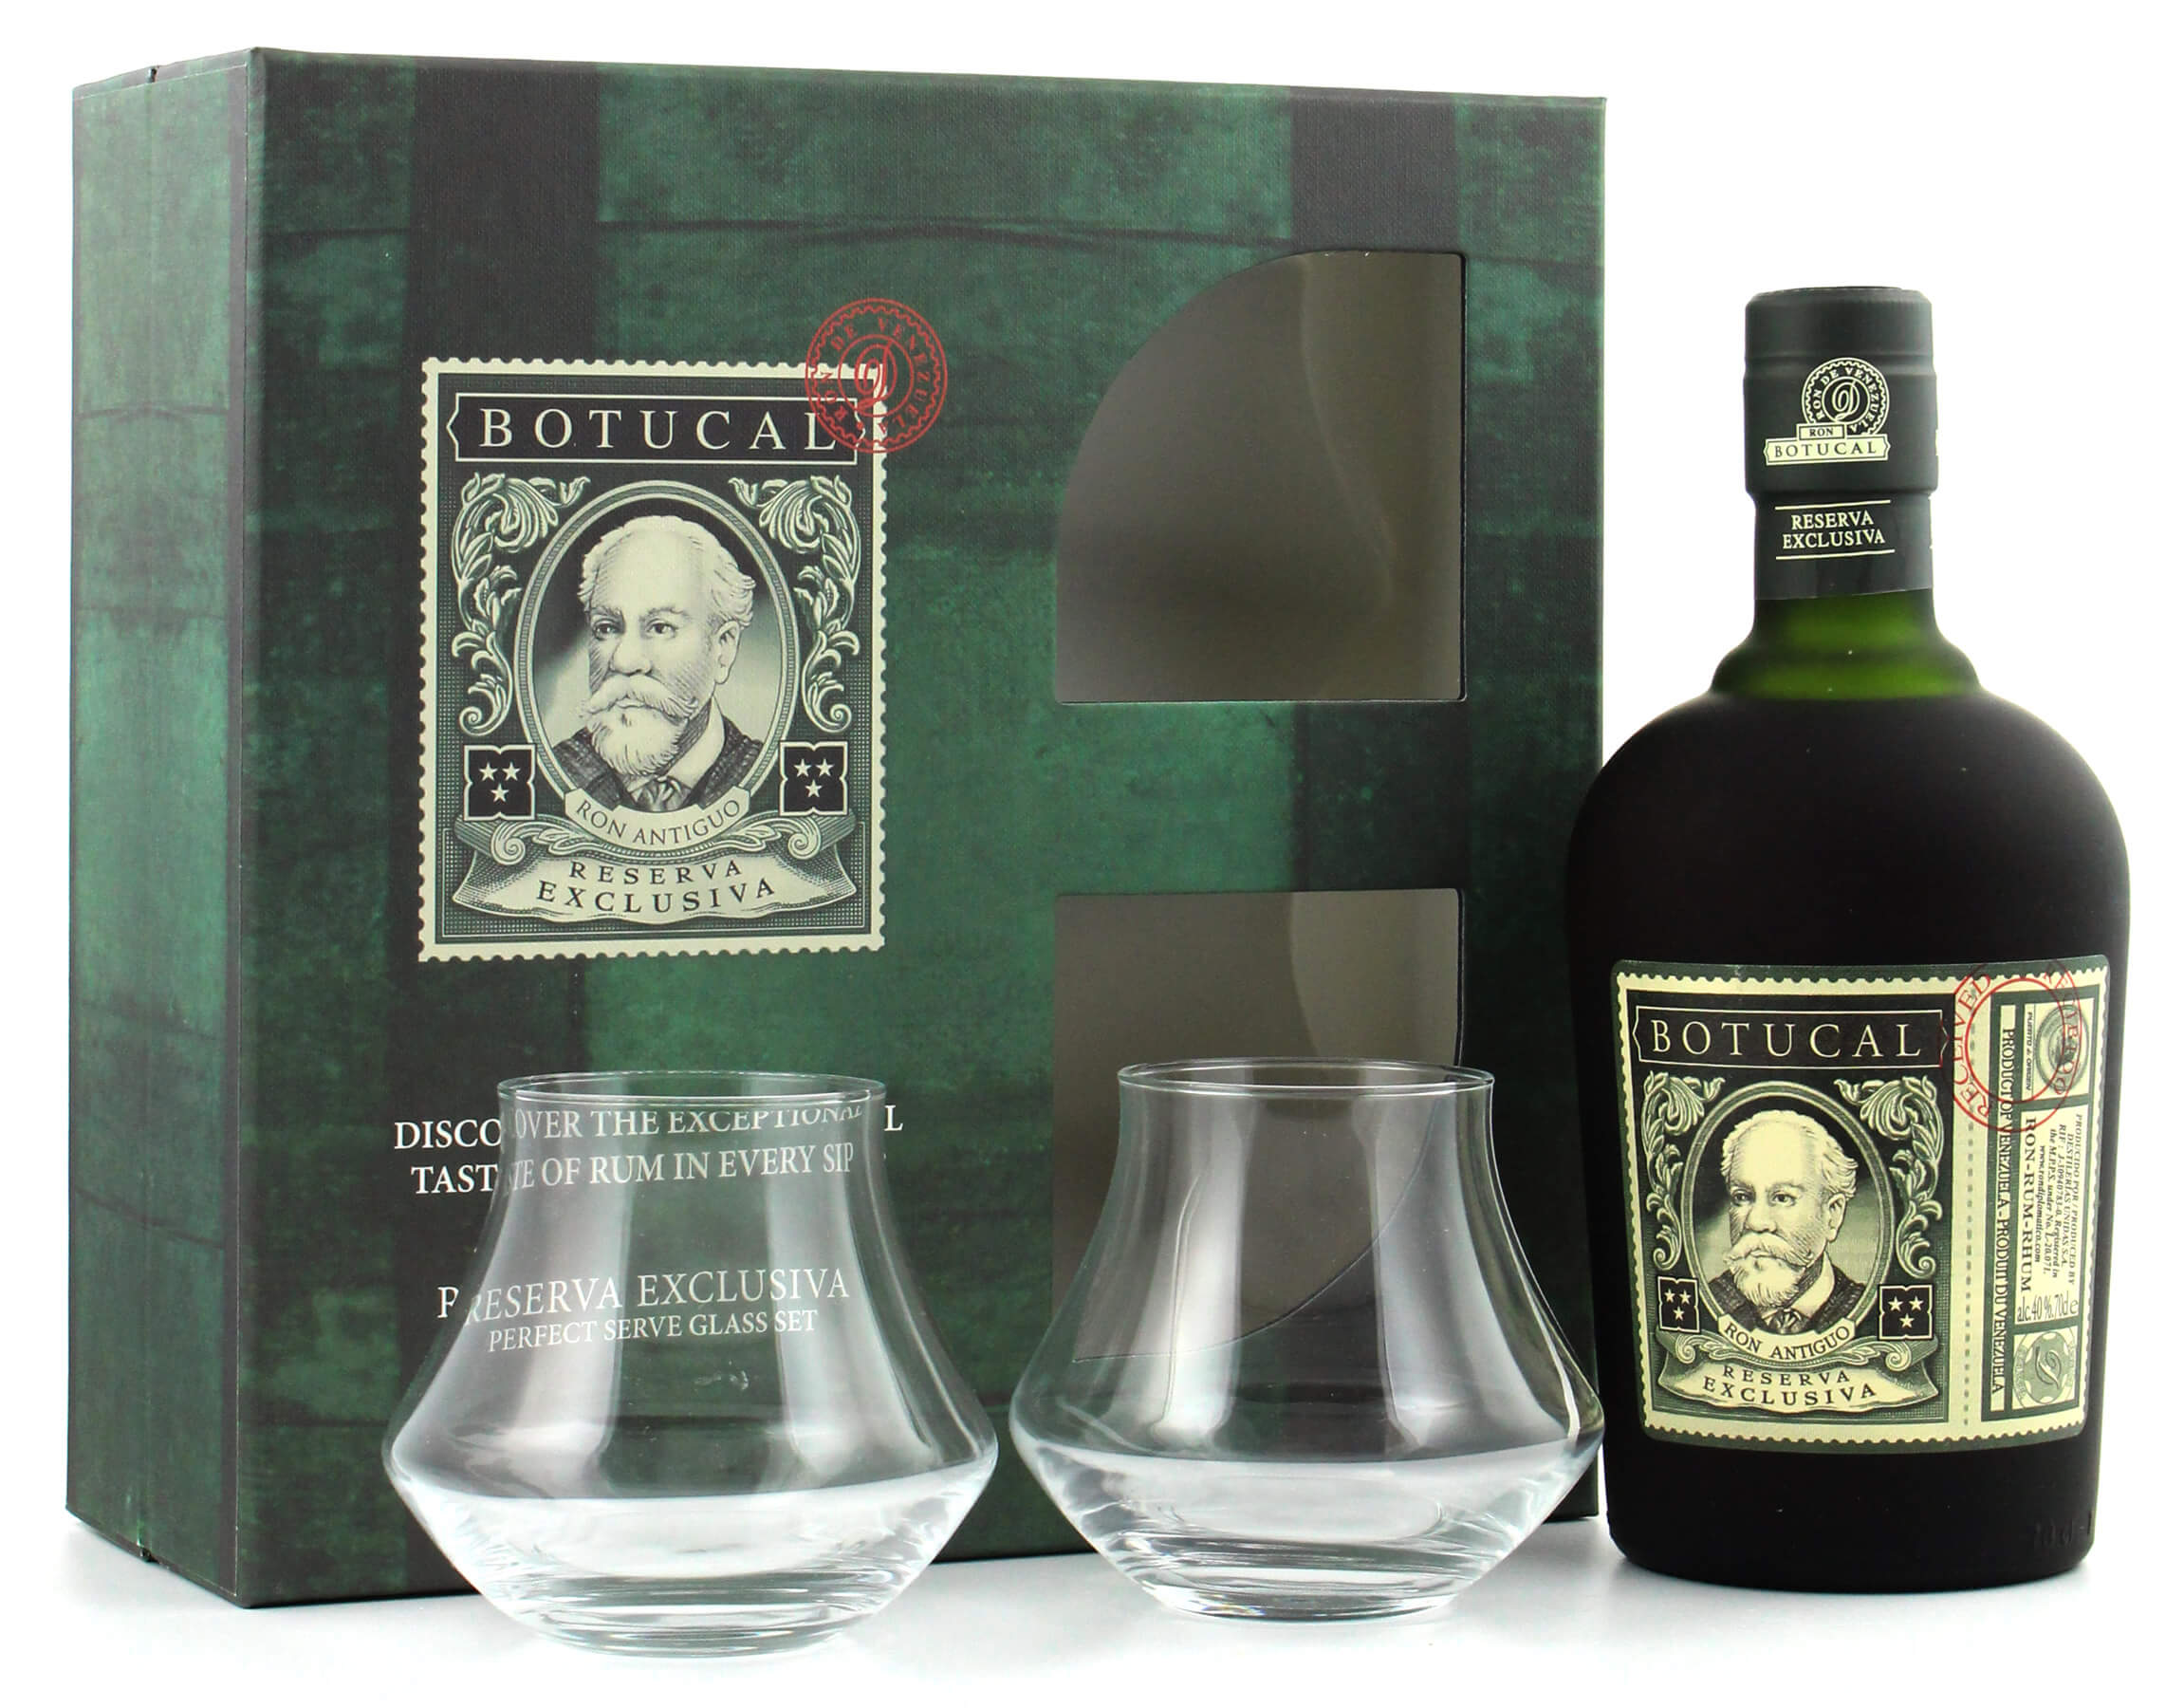 Gläsern mit Geschenkset Botucal Rum Exclusiva 2 Reserva